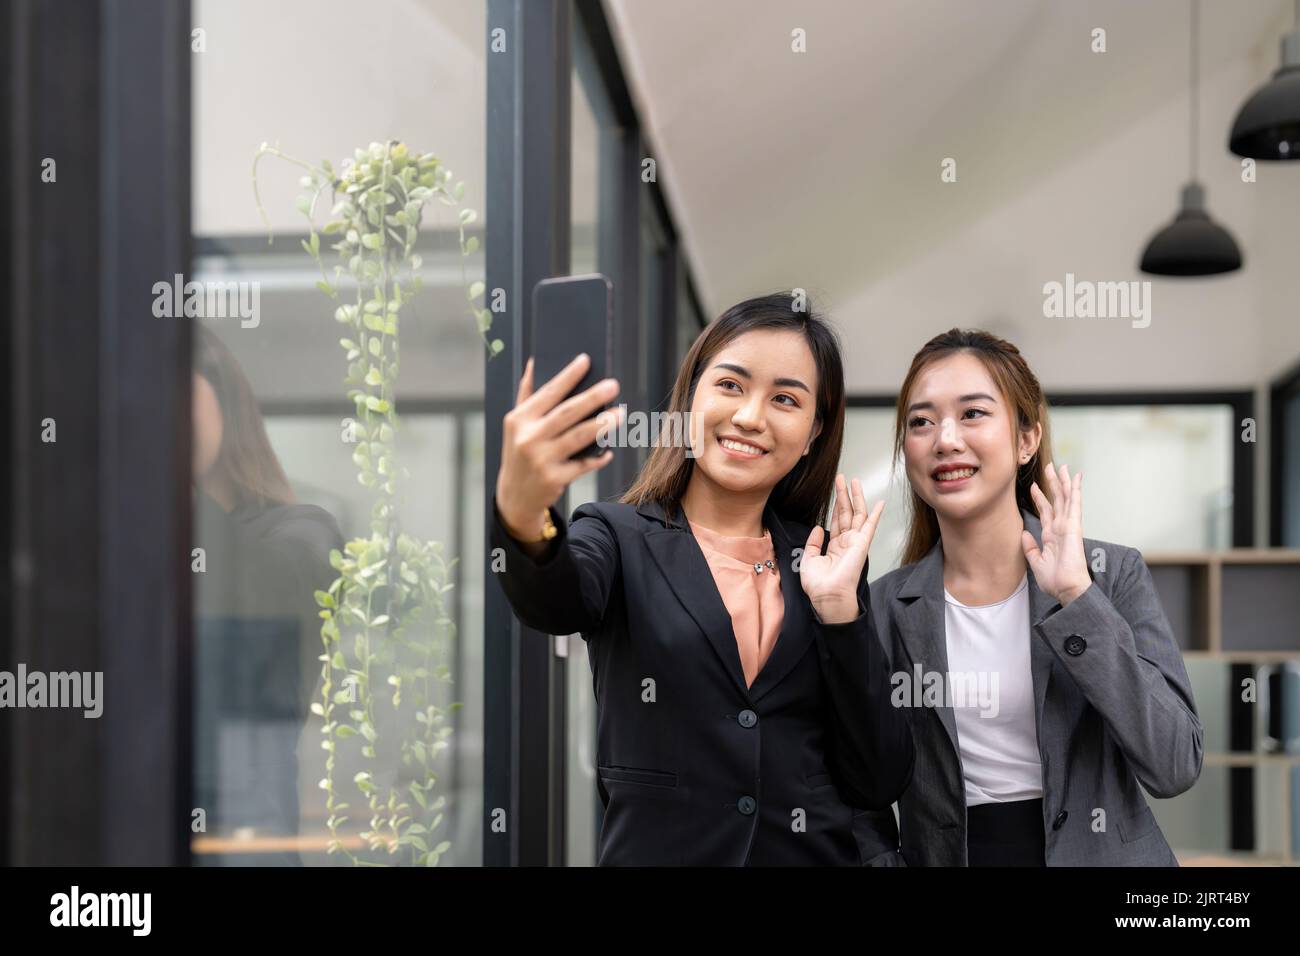 Deux hommes d'affaires asiatiques se sont fait passer la main pour saluer leur partenaire lors d'une vidéoconférence avec son équipe. Banque D'Images